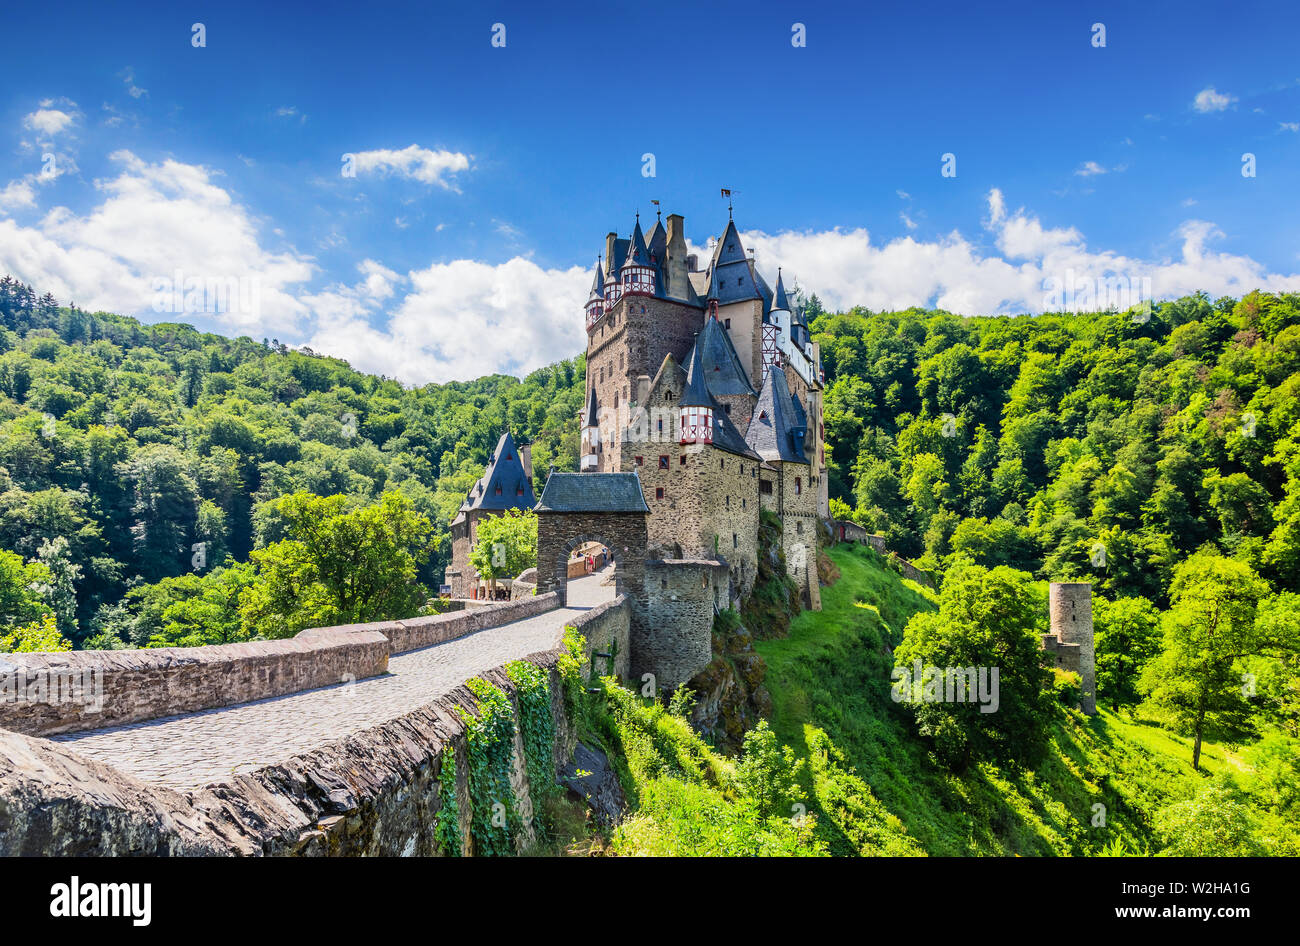 Castello Eltz o Burg Eltz. Castello medievale sulle colline sopra il fiume Moselle. Renania Palatinato in Germania. Foto Stock